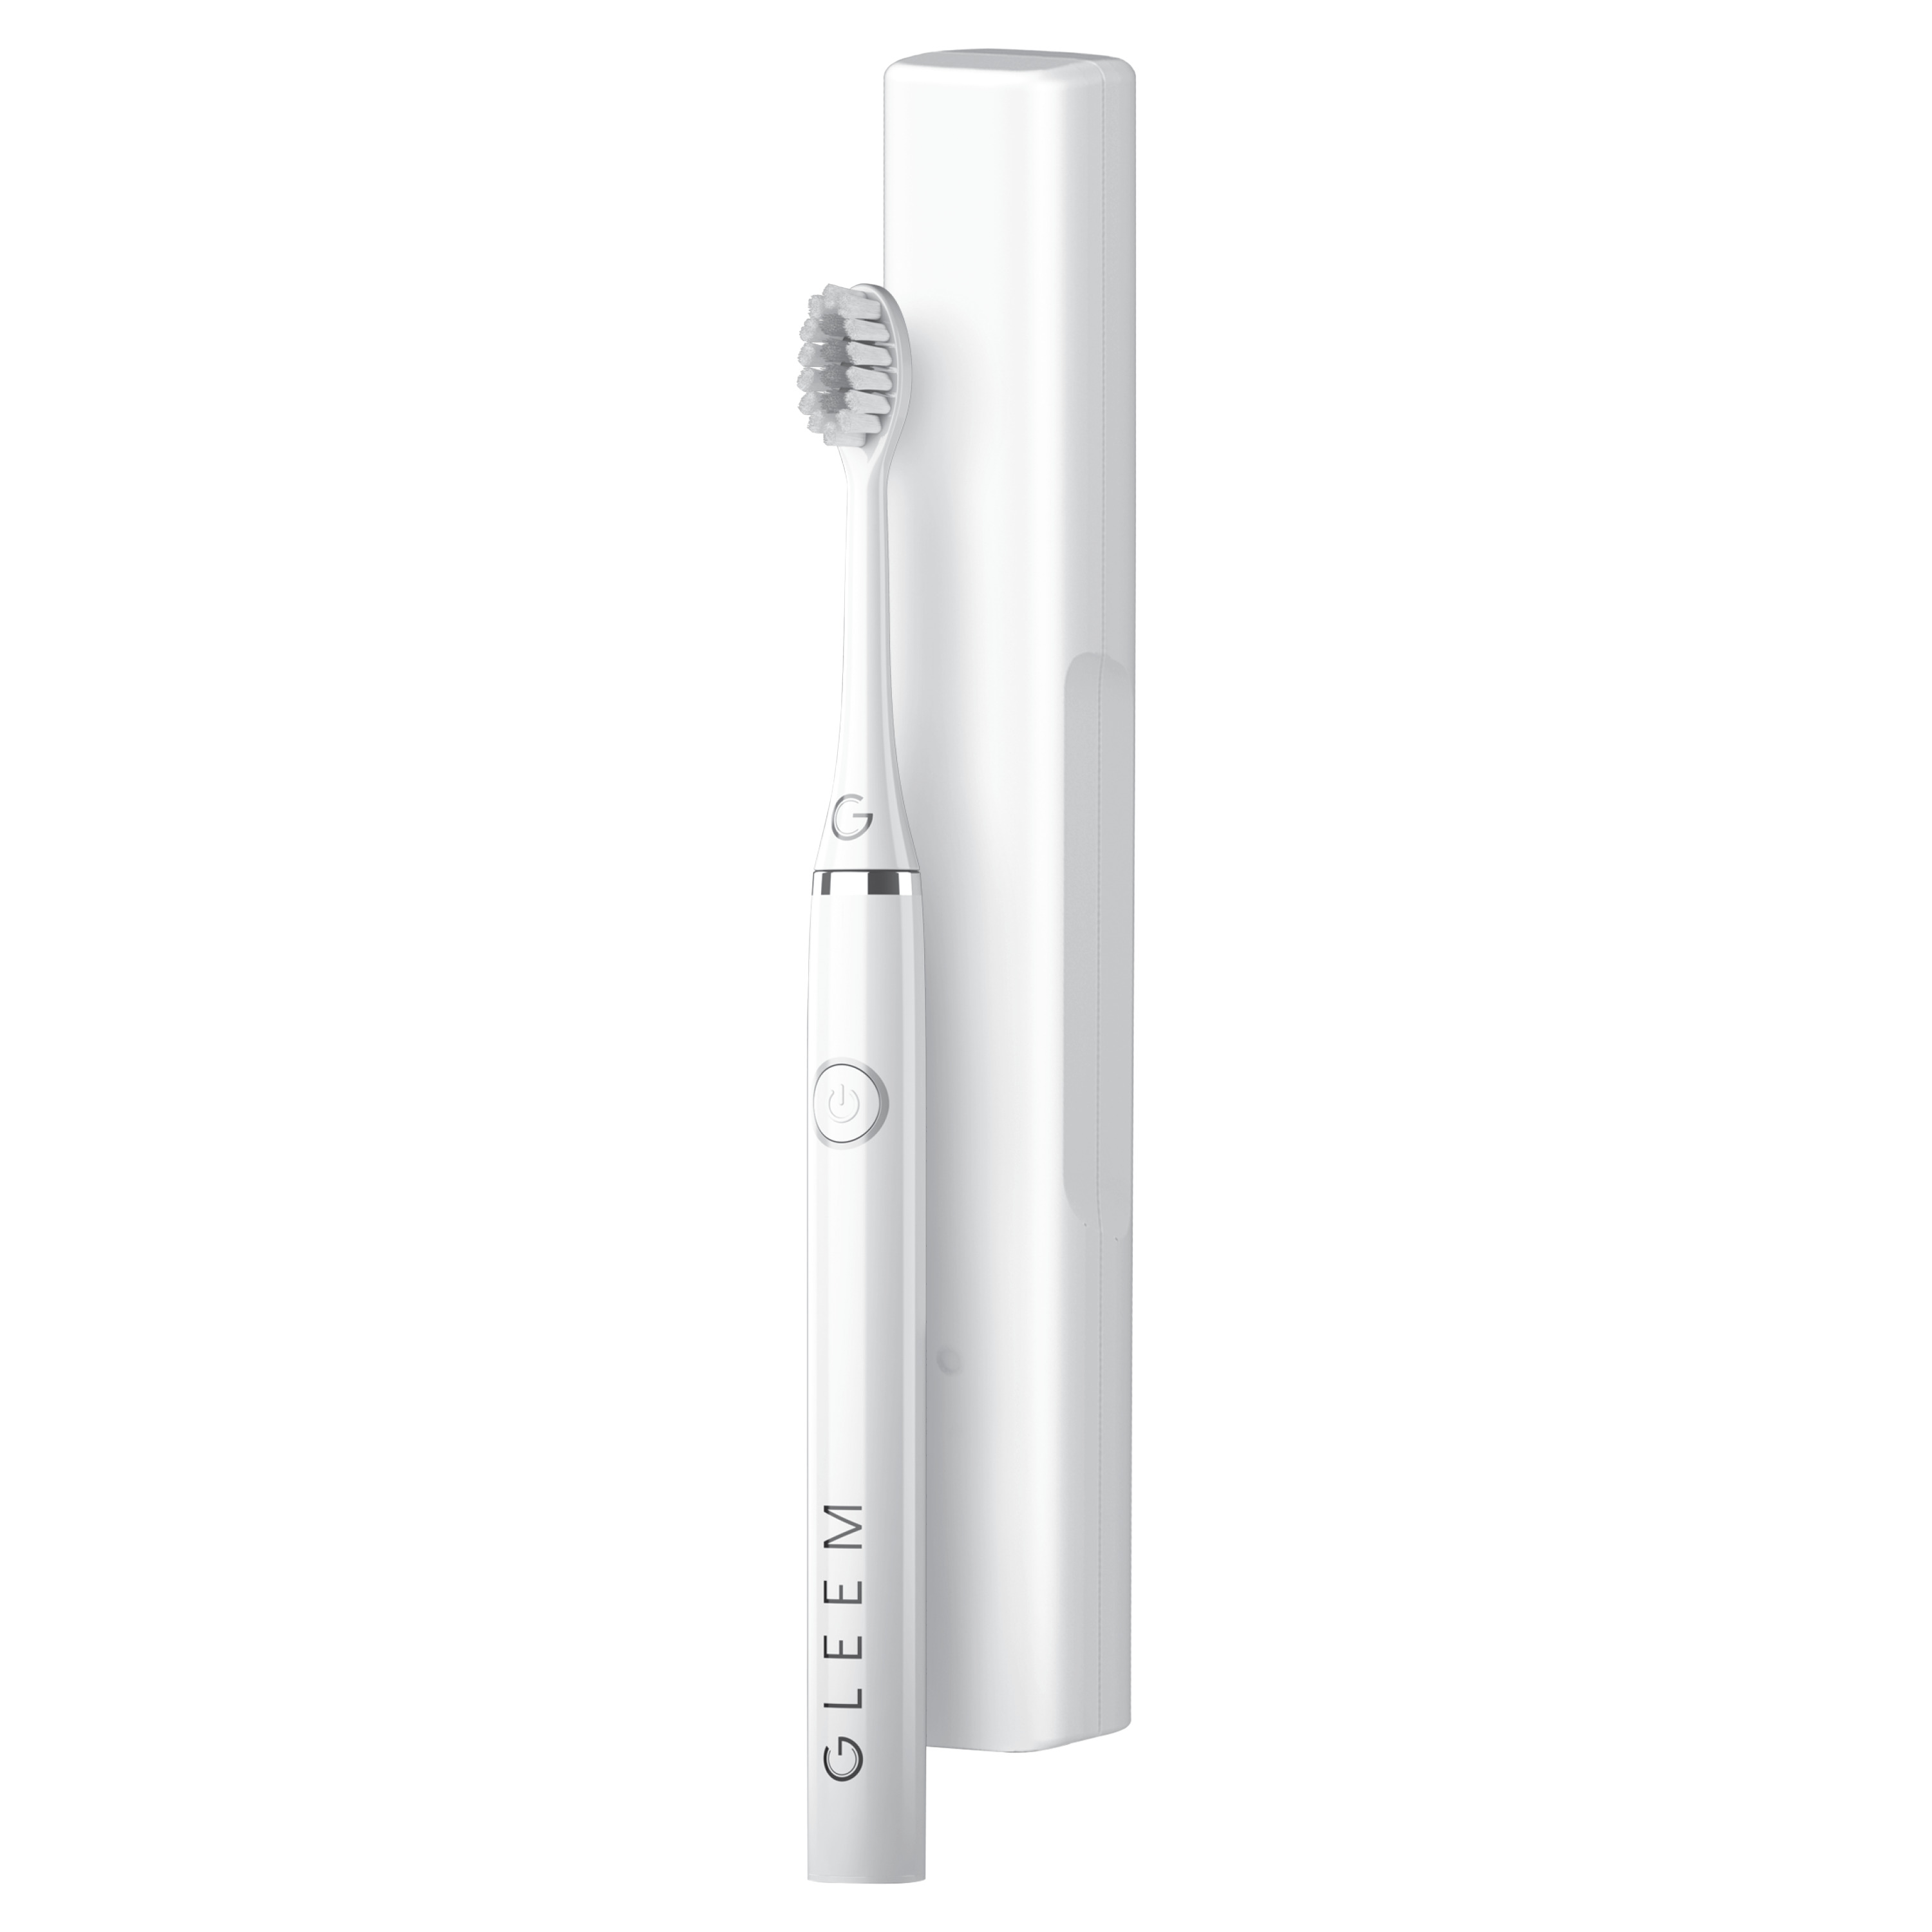 GLEEM Power Toothbrush, White - image 4 of 4